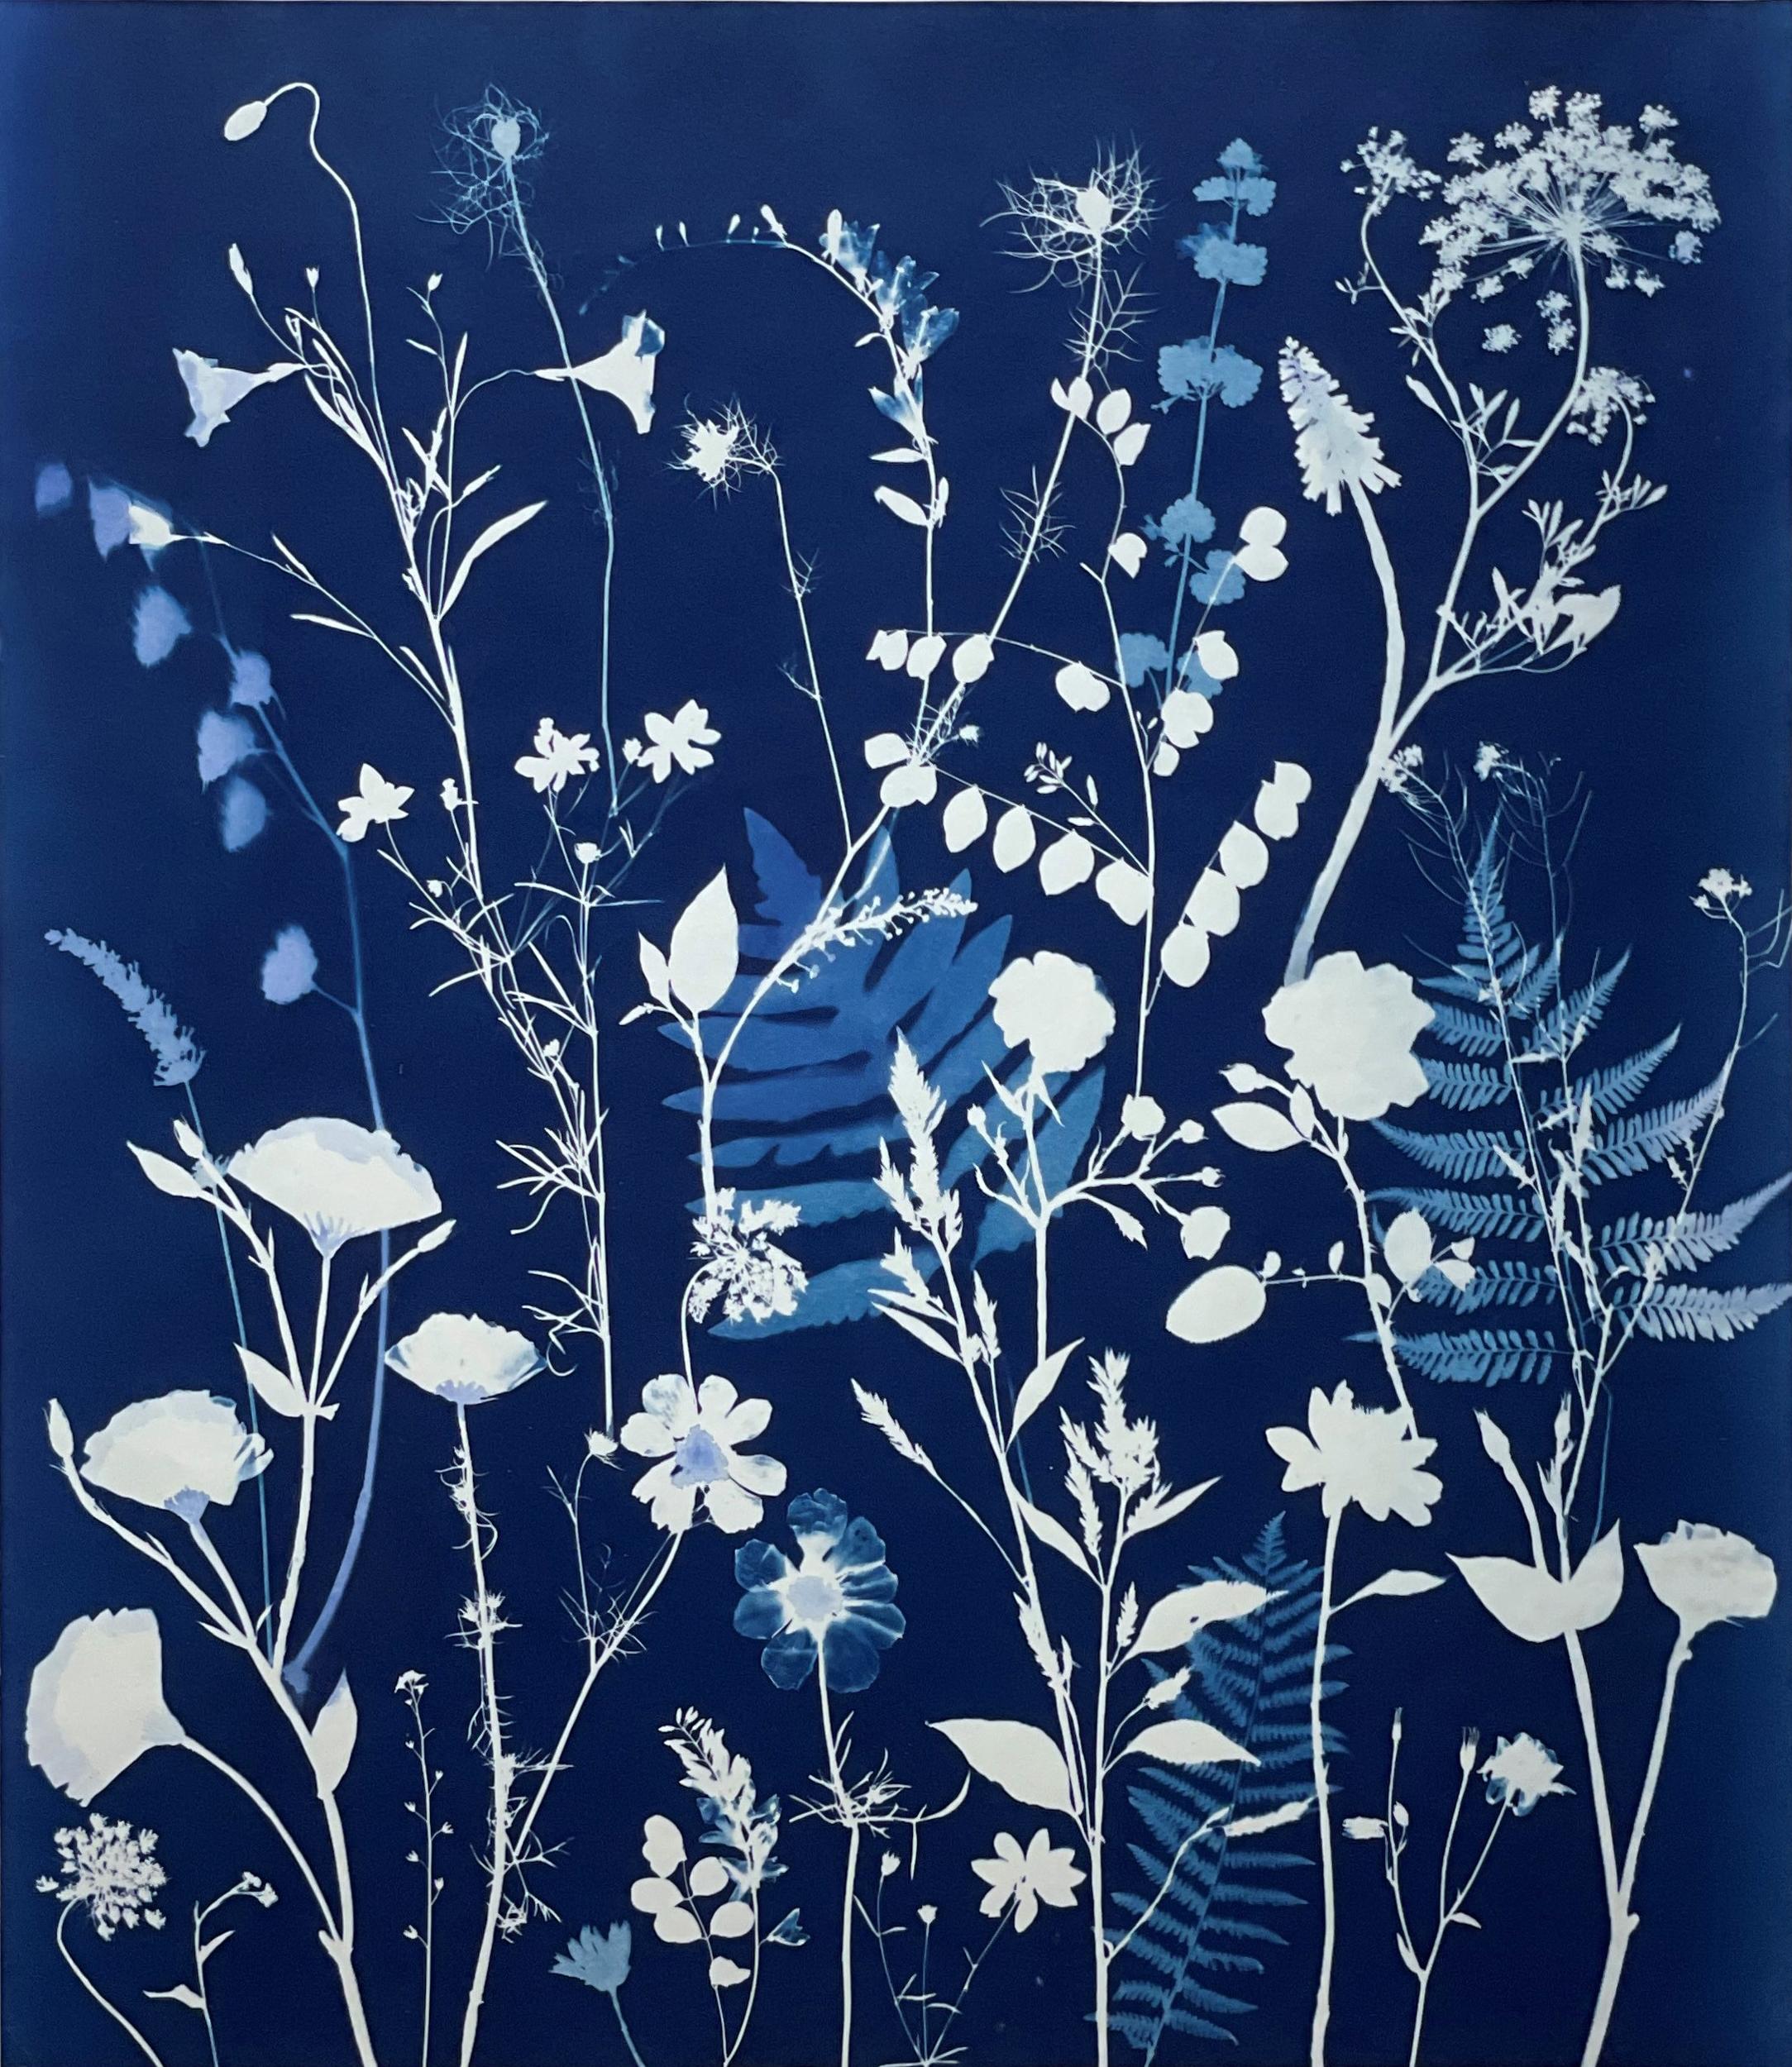 Nature morte figurative de fleurs bleu pâle et blanches sur fond de cyanotype indigo 
" Peinture cyanotype (dentelle de la reine Anne, fougères, feuilles, etc.), réalisée par l'artiste de la vallée de l'Hudson, Julia Whitney Barnes, en